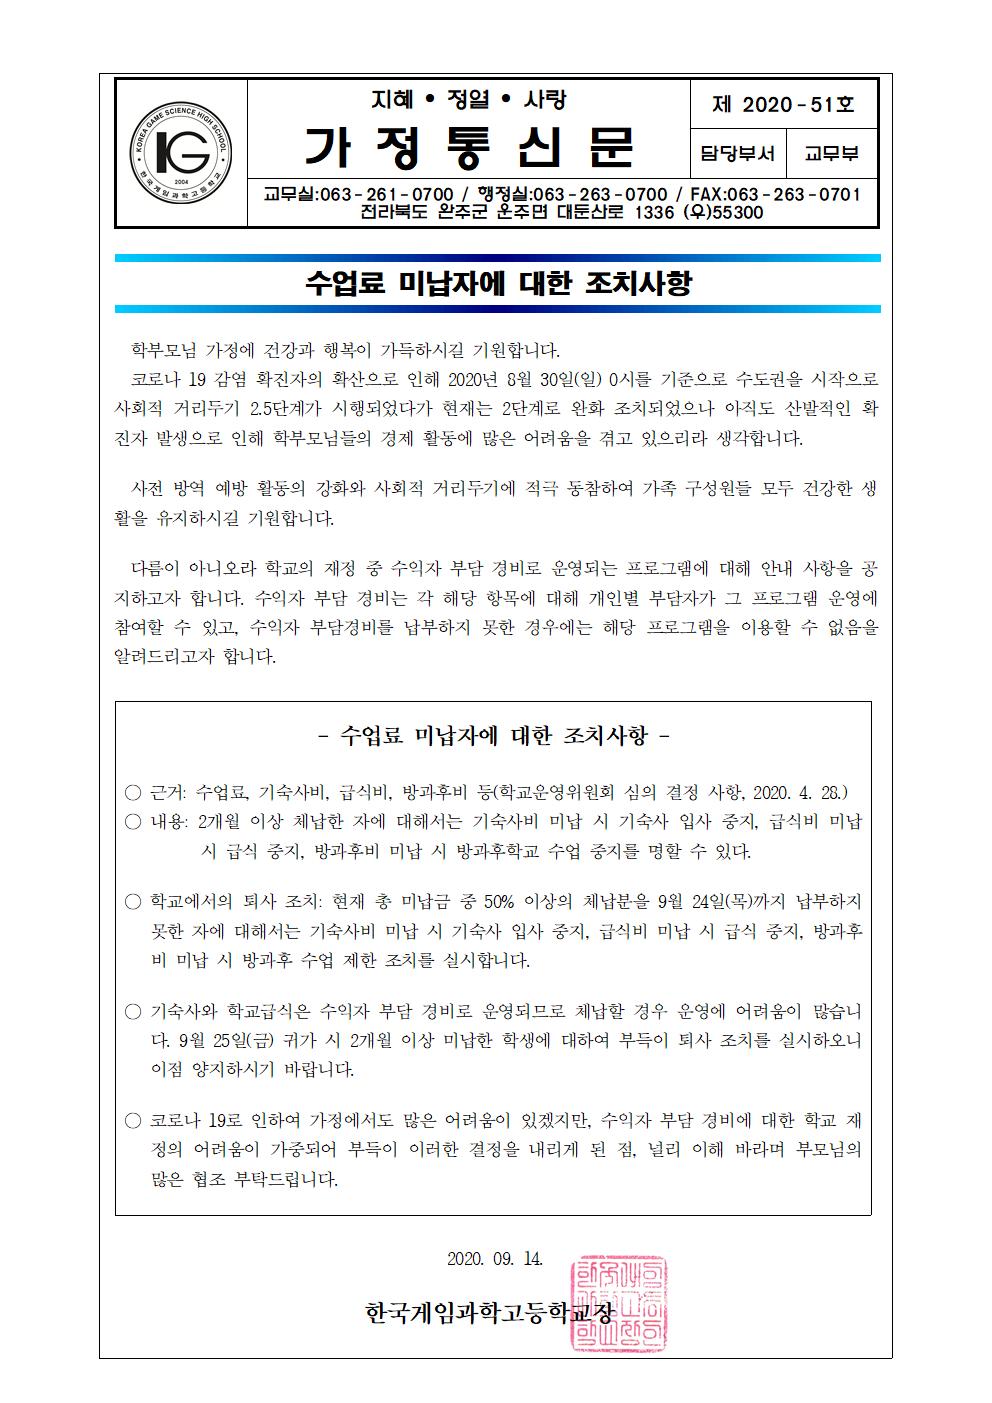 수업료미납자에대한조치사항가정통신문9.14